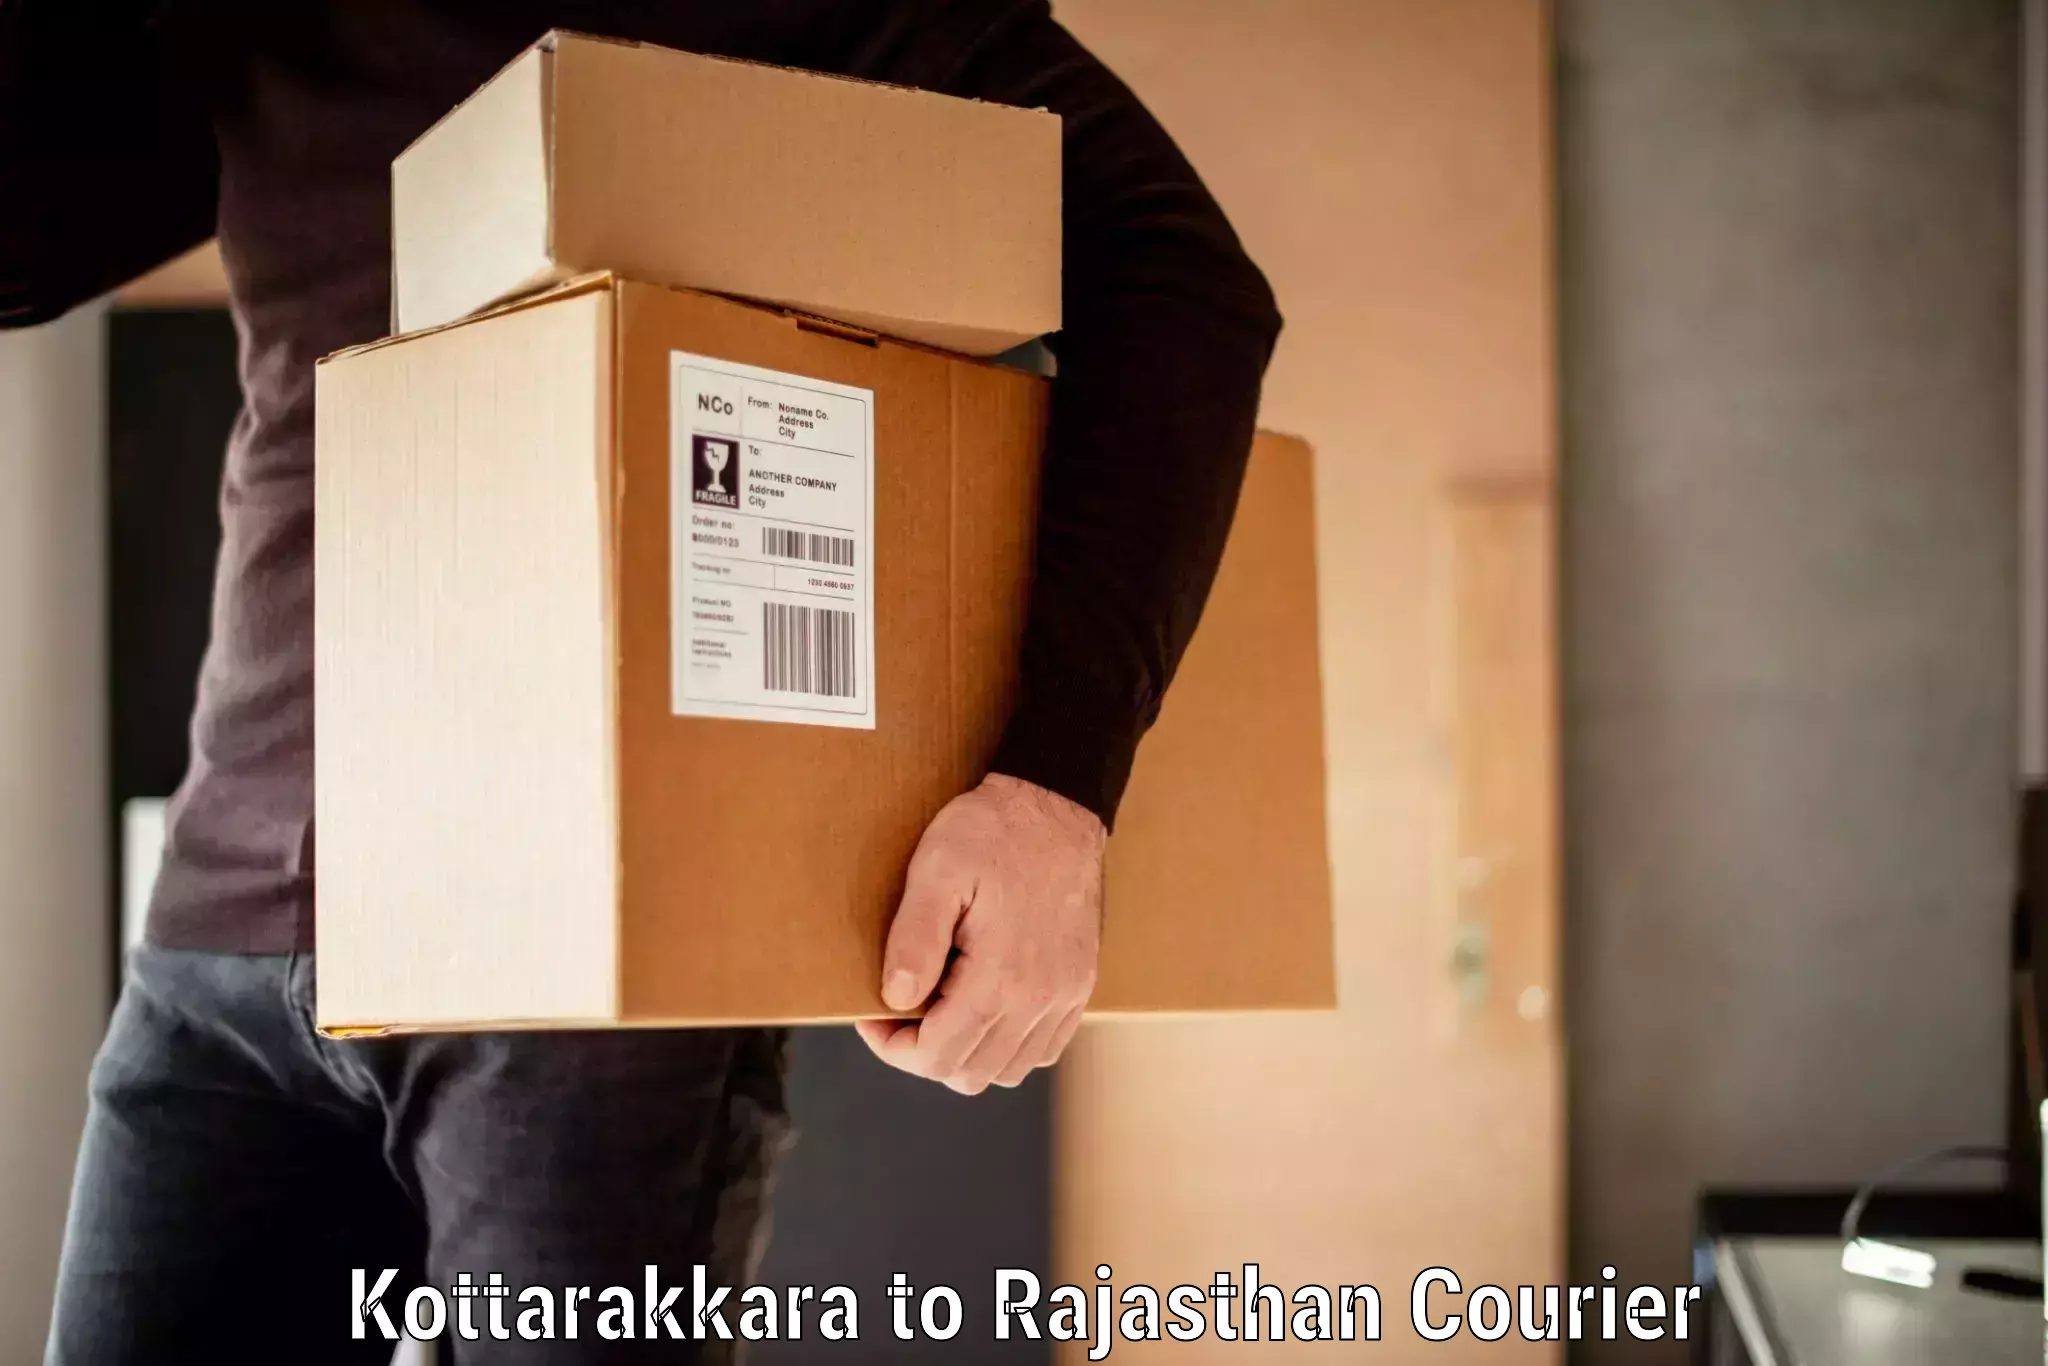 Baggage transport innovation Kottarakkara to Aklera